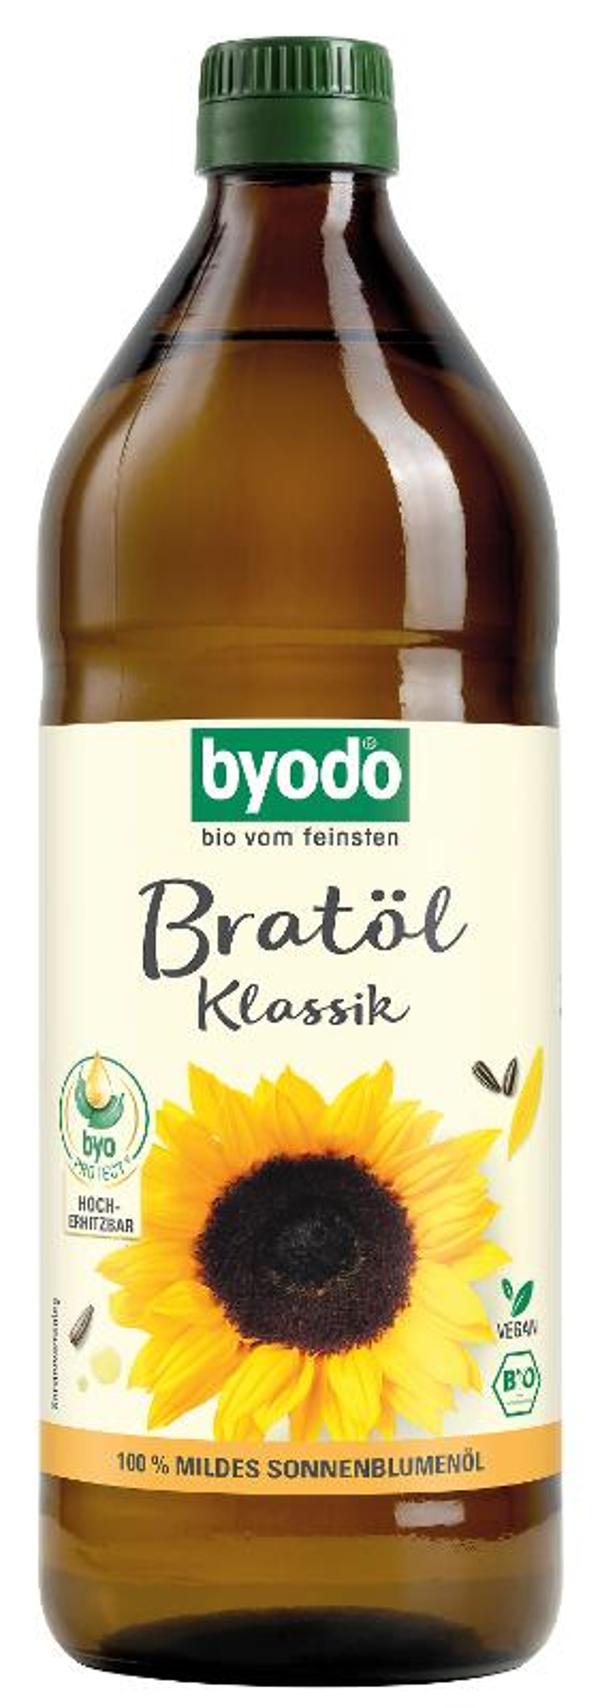 Produktfoto zu Bratöl klassisch-Sonnenblumenöl-